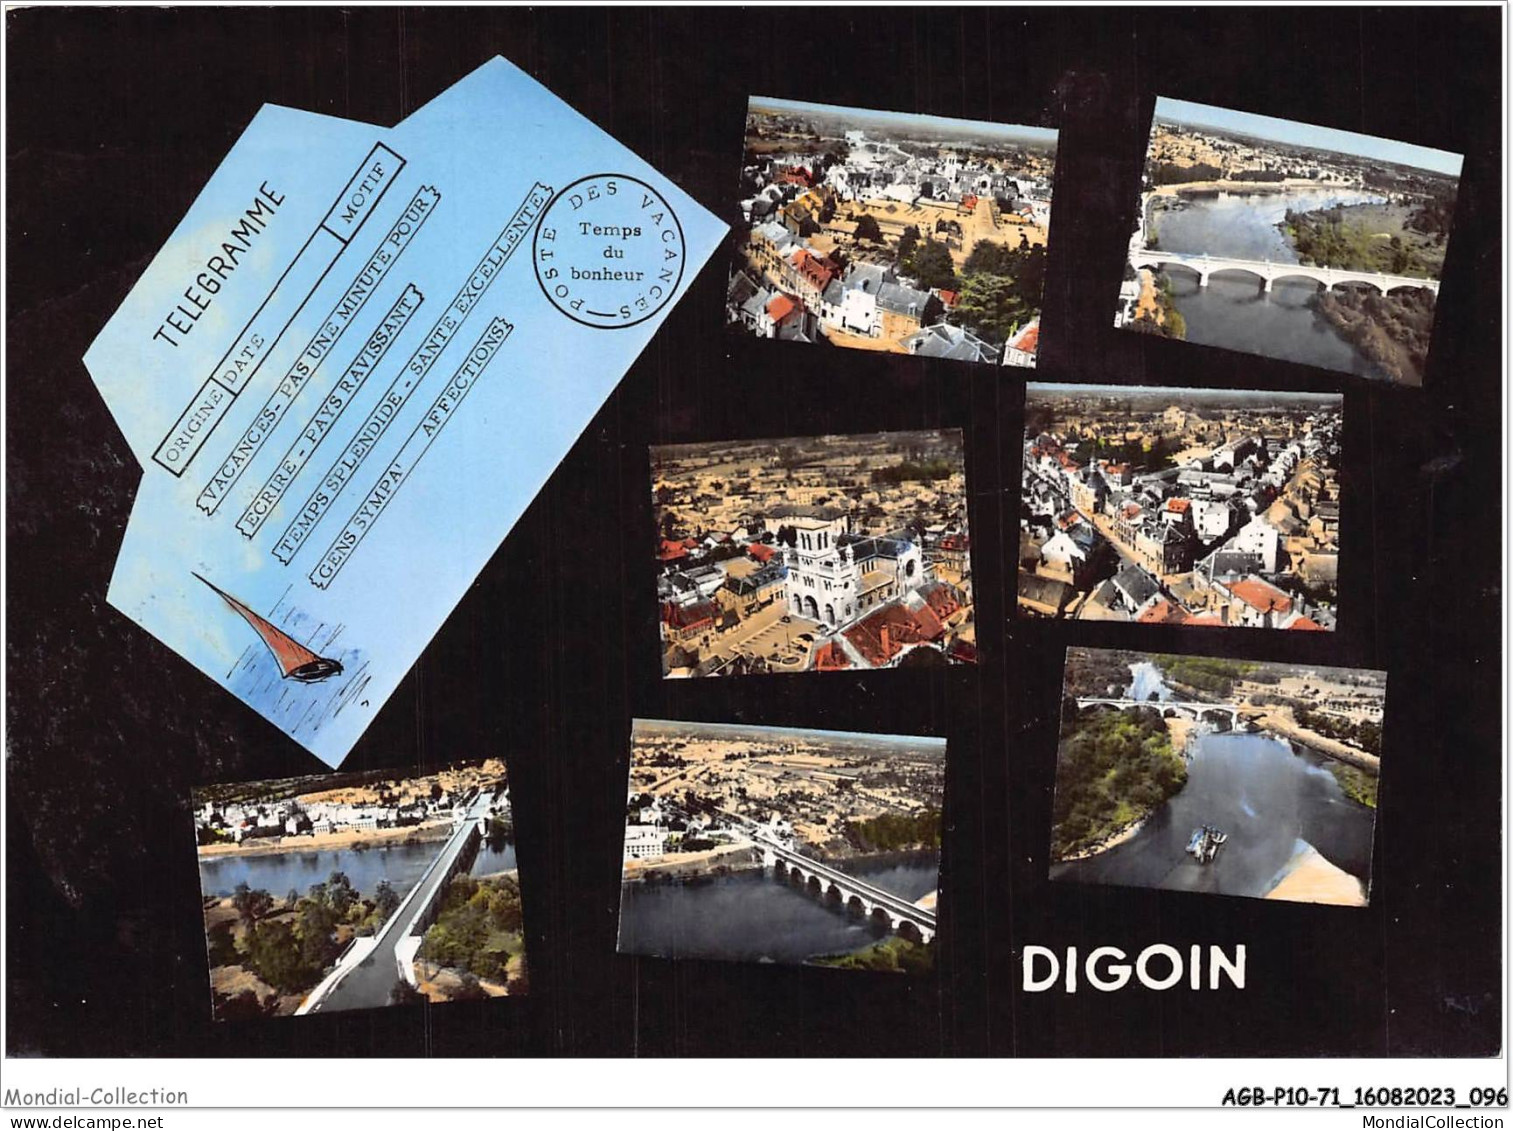 AGBP10-71-1023 - DIGOIN - - Digoin